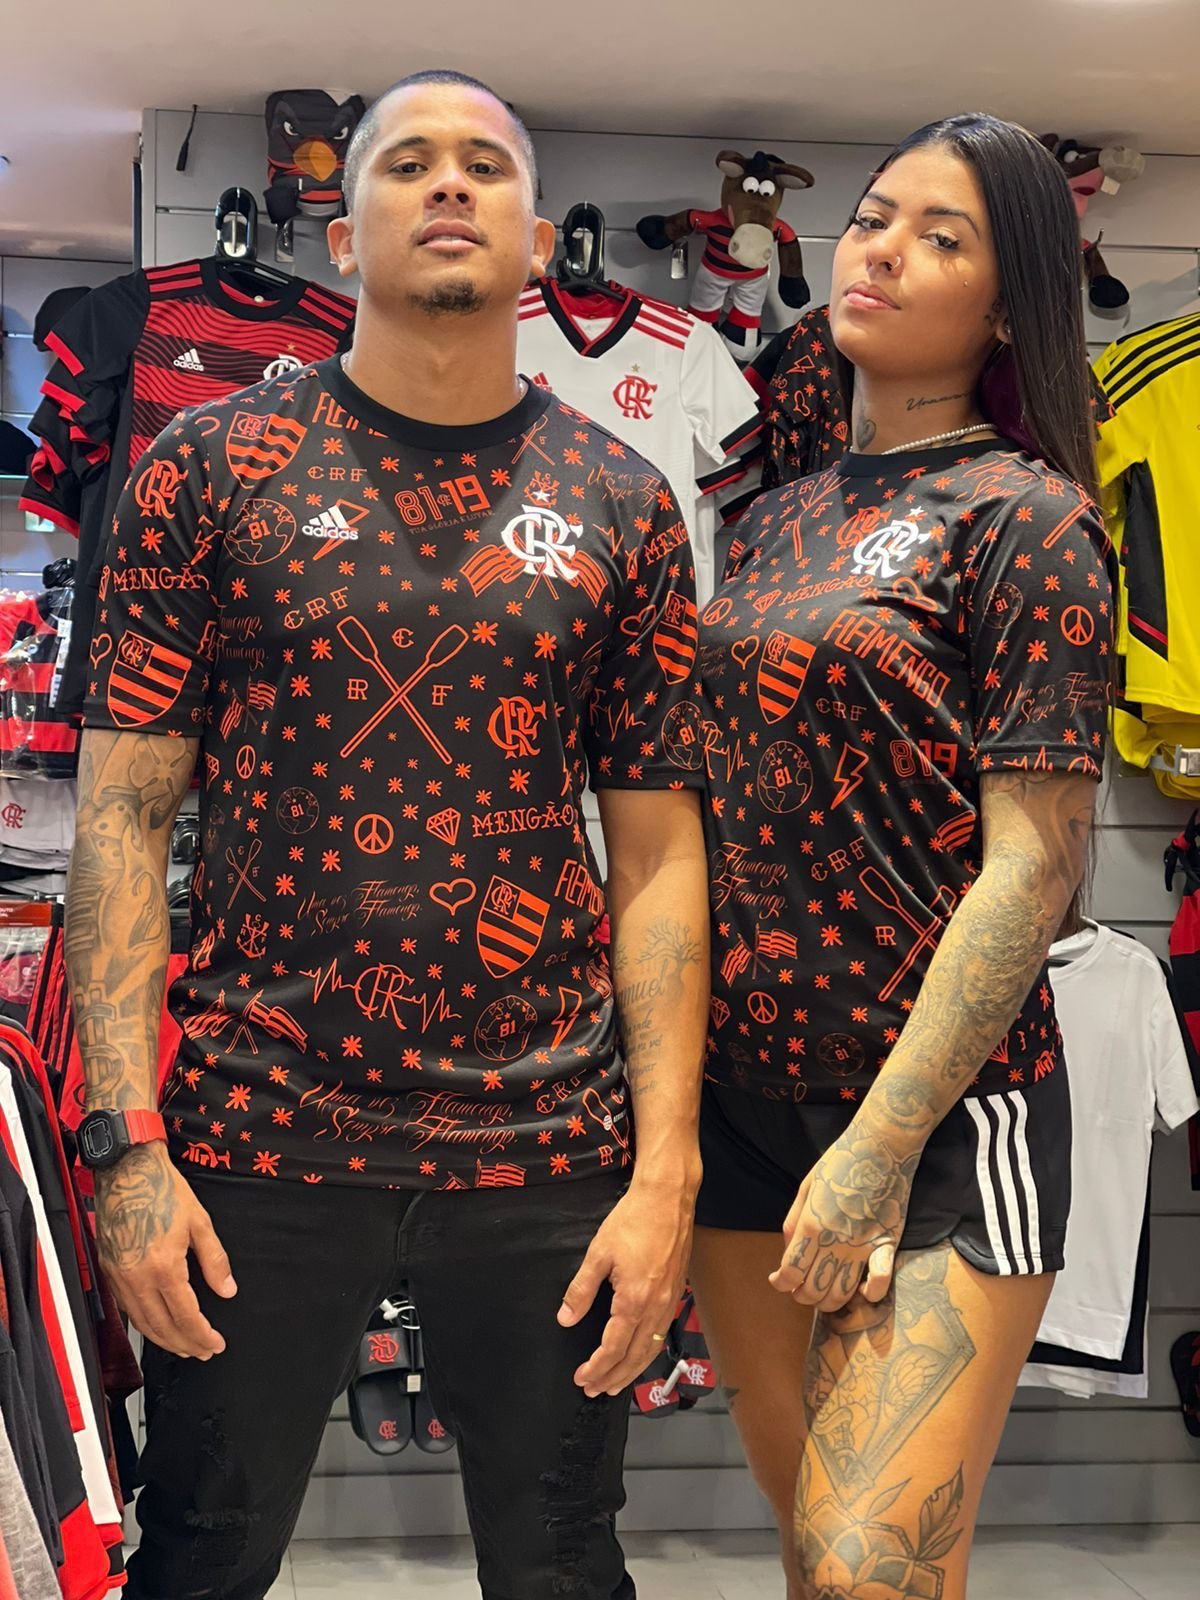 Camisa de Aquecimento Flamengo 22/23 - Pré-Jogo Feminina - Preta